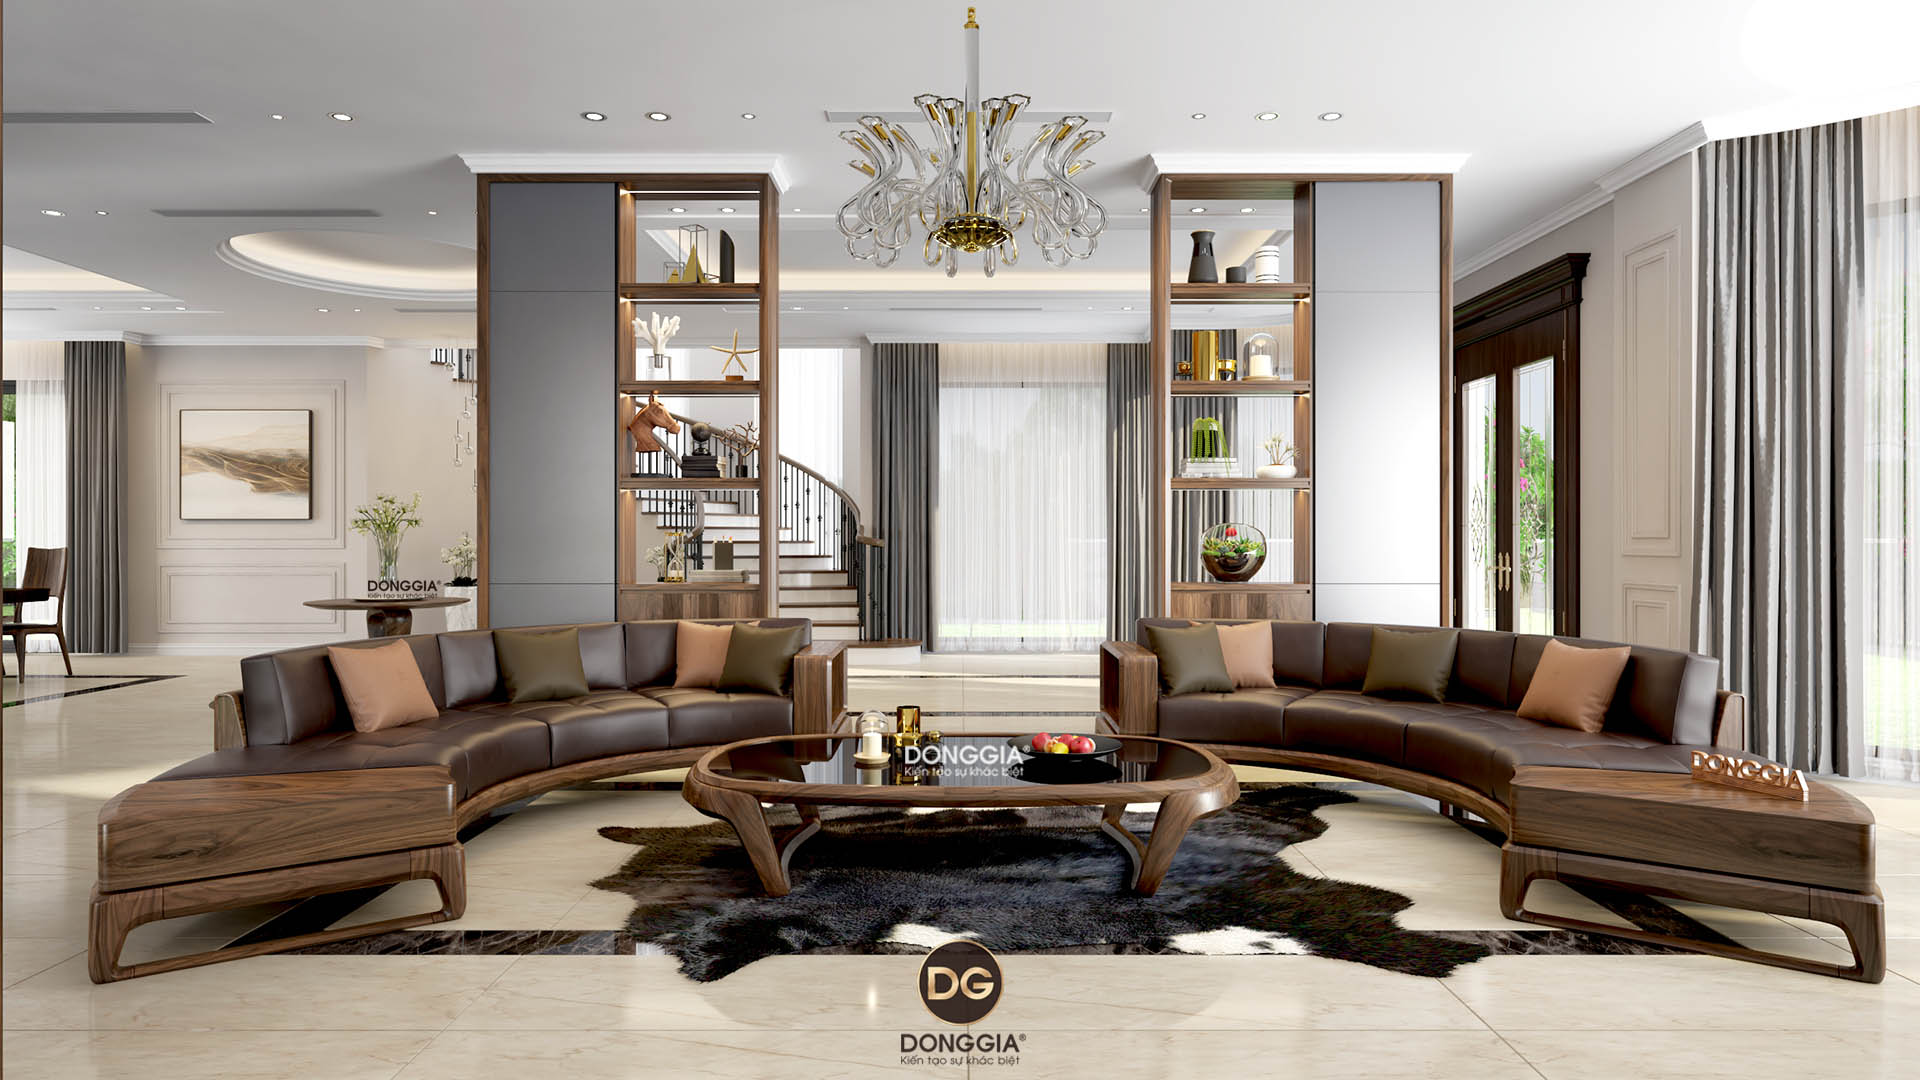 Thiết kế nội thất của Đồng Gia với gỗ óc chó sẽ mang đến cho bạn một không gian sống đẹp và sang trọng. Với các chất liệu độc đáo, màu sắc tinh tế và sự kết hợp khéo léo, Đồng Gia cam kết đáp ứng mọi nhu cầu của khách hàng. Hãy tận hưởng một không gian sống hoàn hảo nhất tại Đồng Gia.